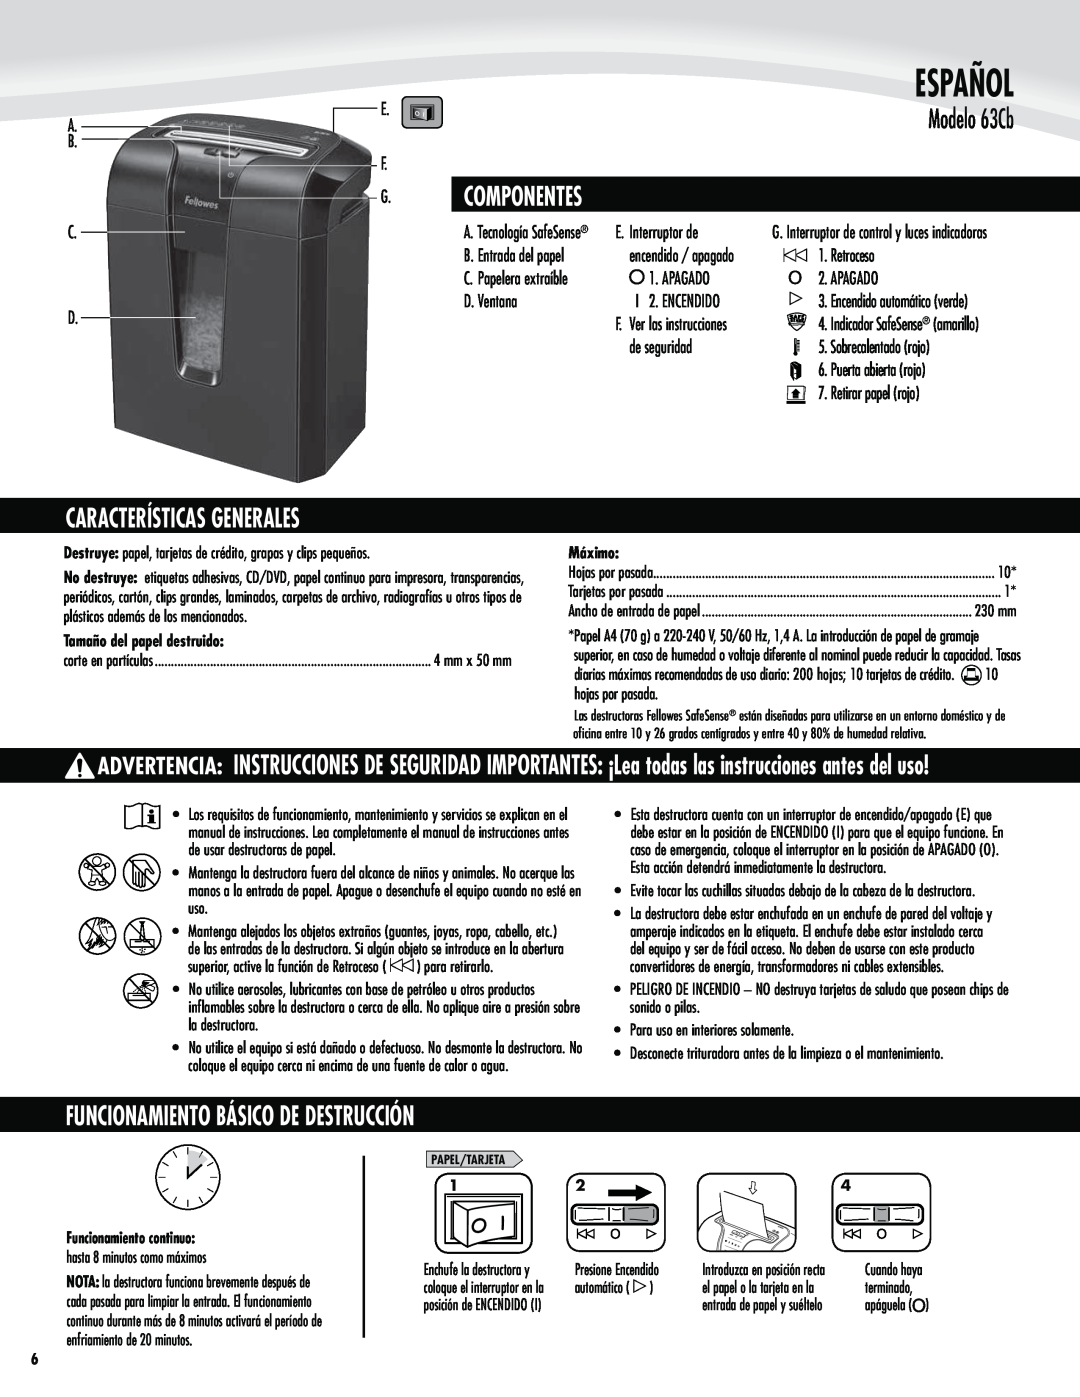 Fellowes 63cb manual Español, Modelo 63Cb, Funcionamiento Básico De Destrucción, Características Generales, Componentes 